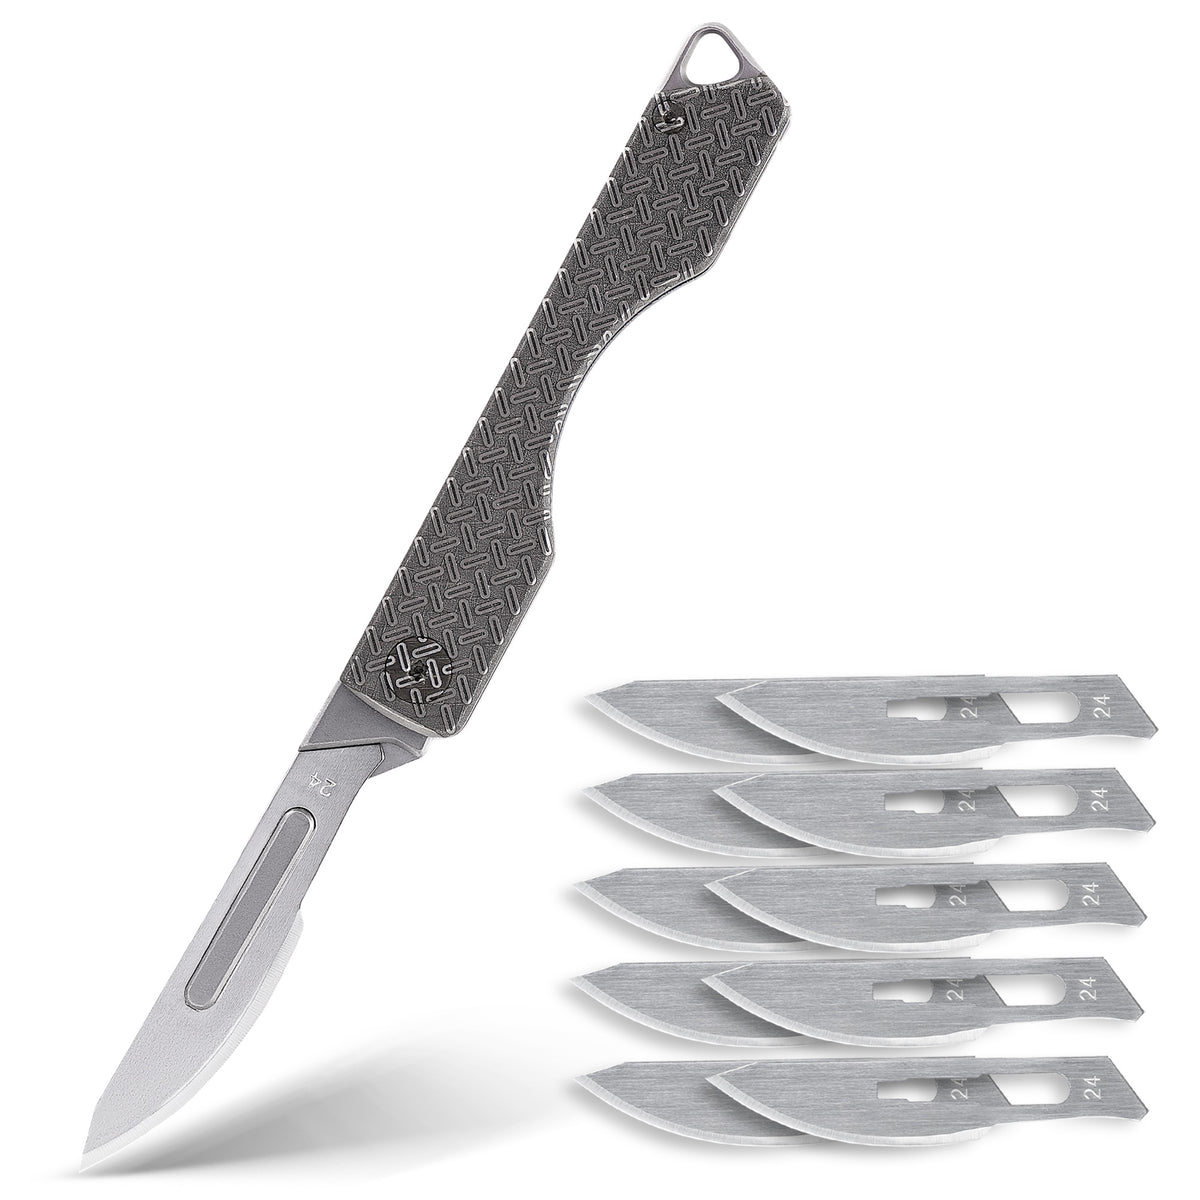 KK01KUP TITANIUM FOLDING KNIFE, UTILITY EDC POCKET KNIFE WITH #24 REPLACEABLE BLADE